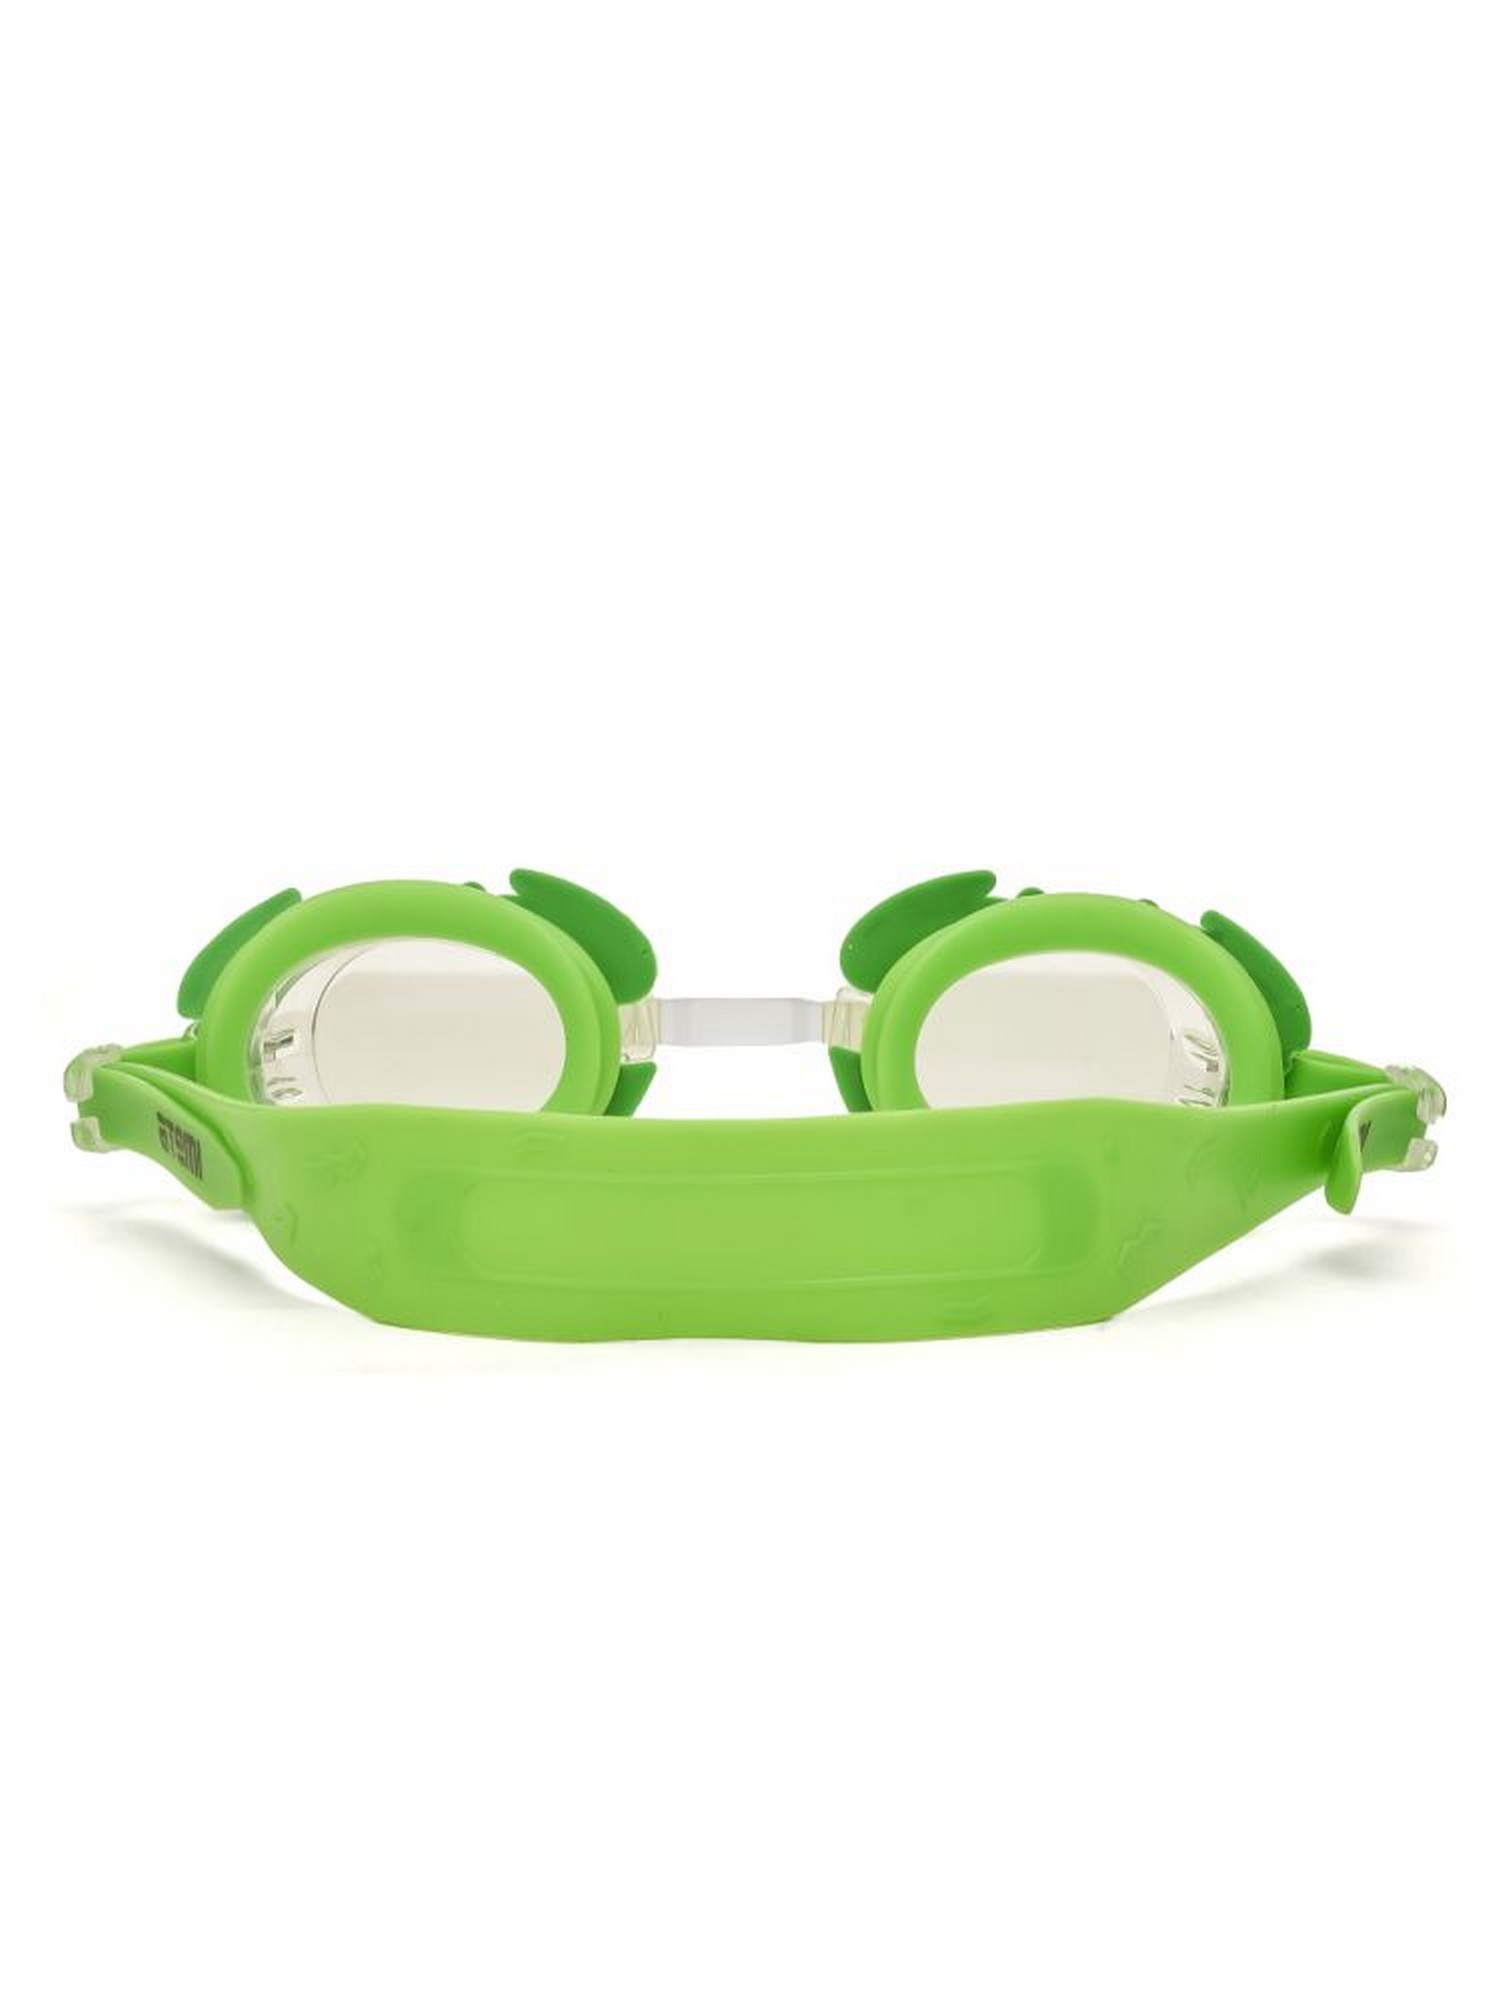 Очки для плавания детские Novus NJG116 краб, зеленый 1500_2000